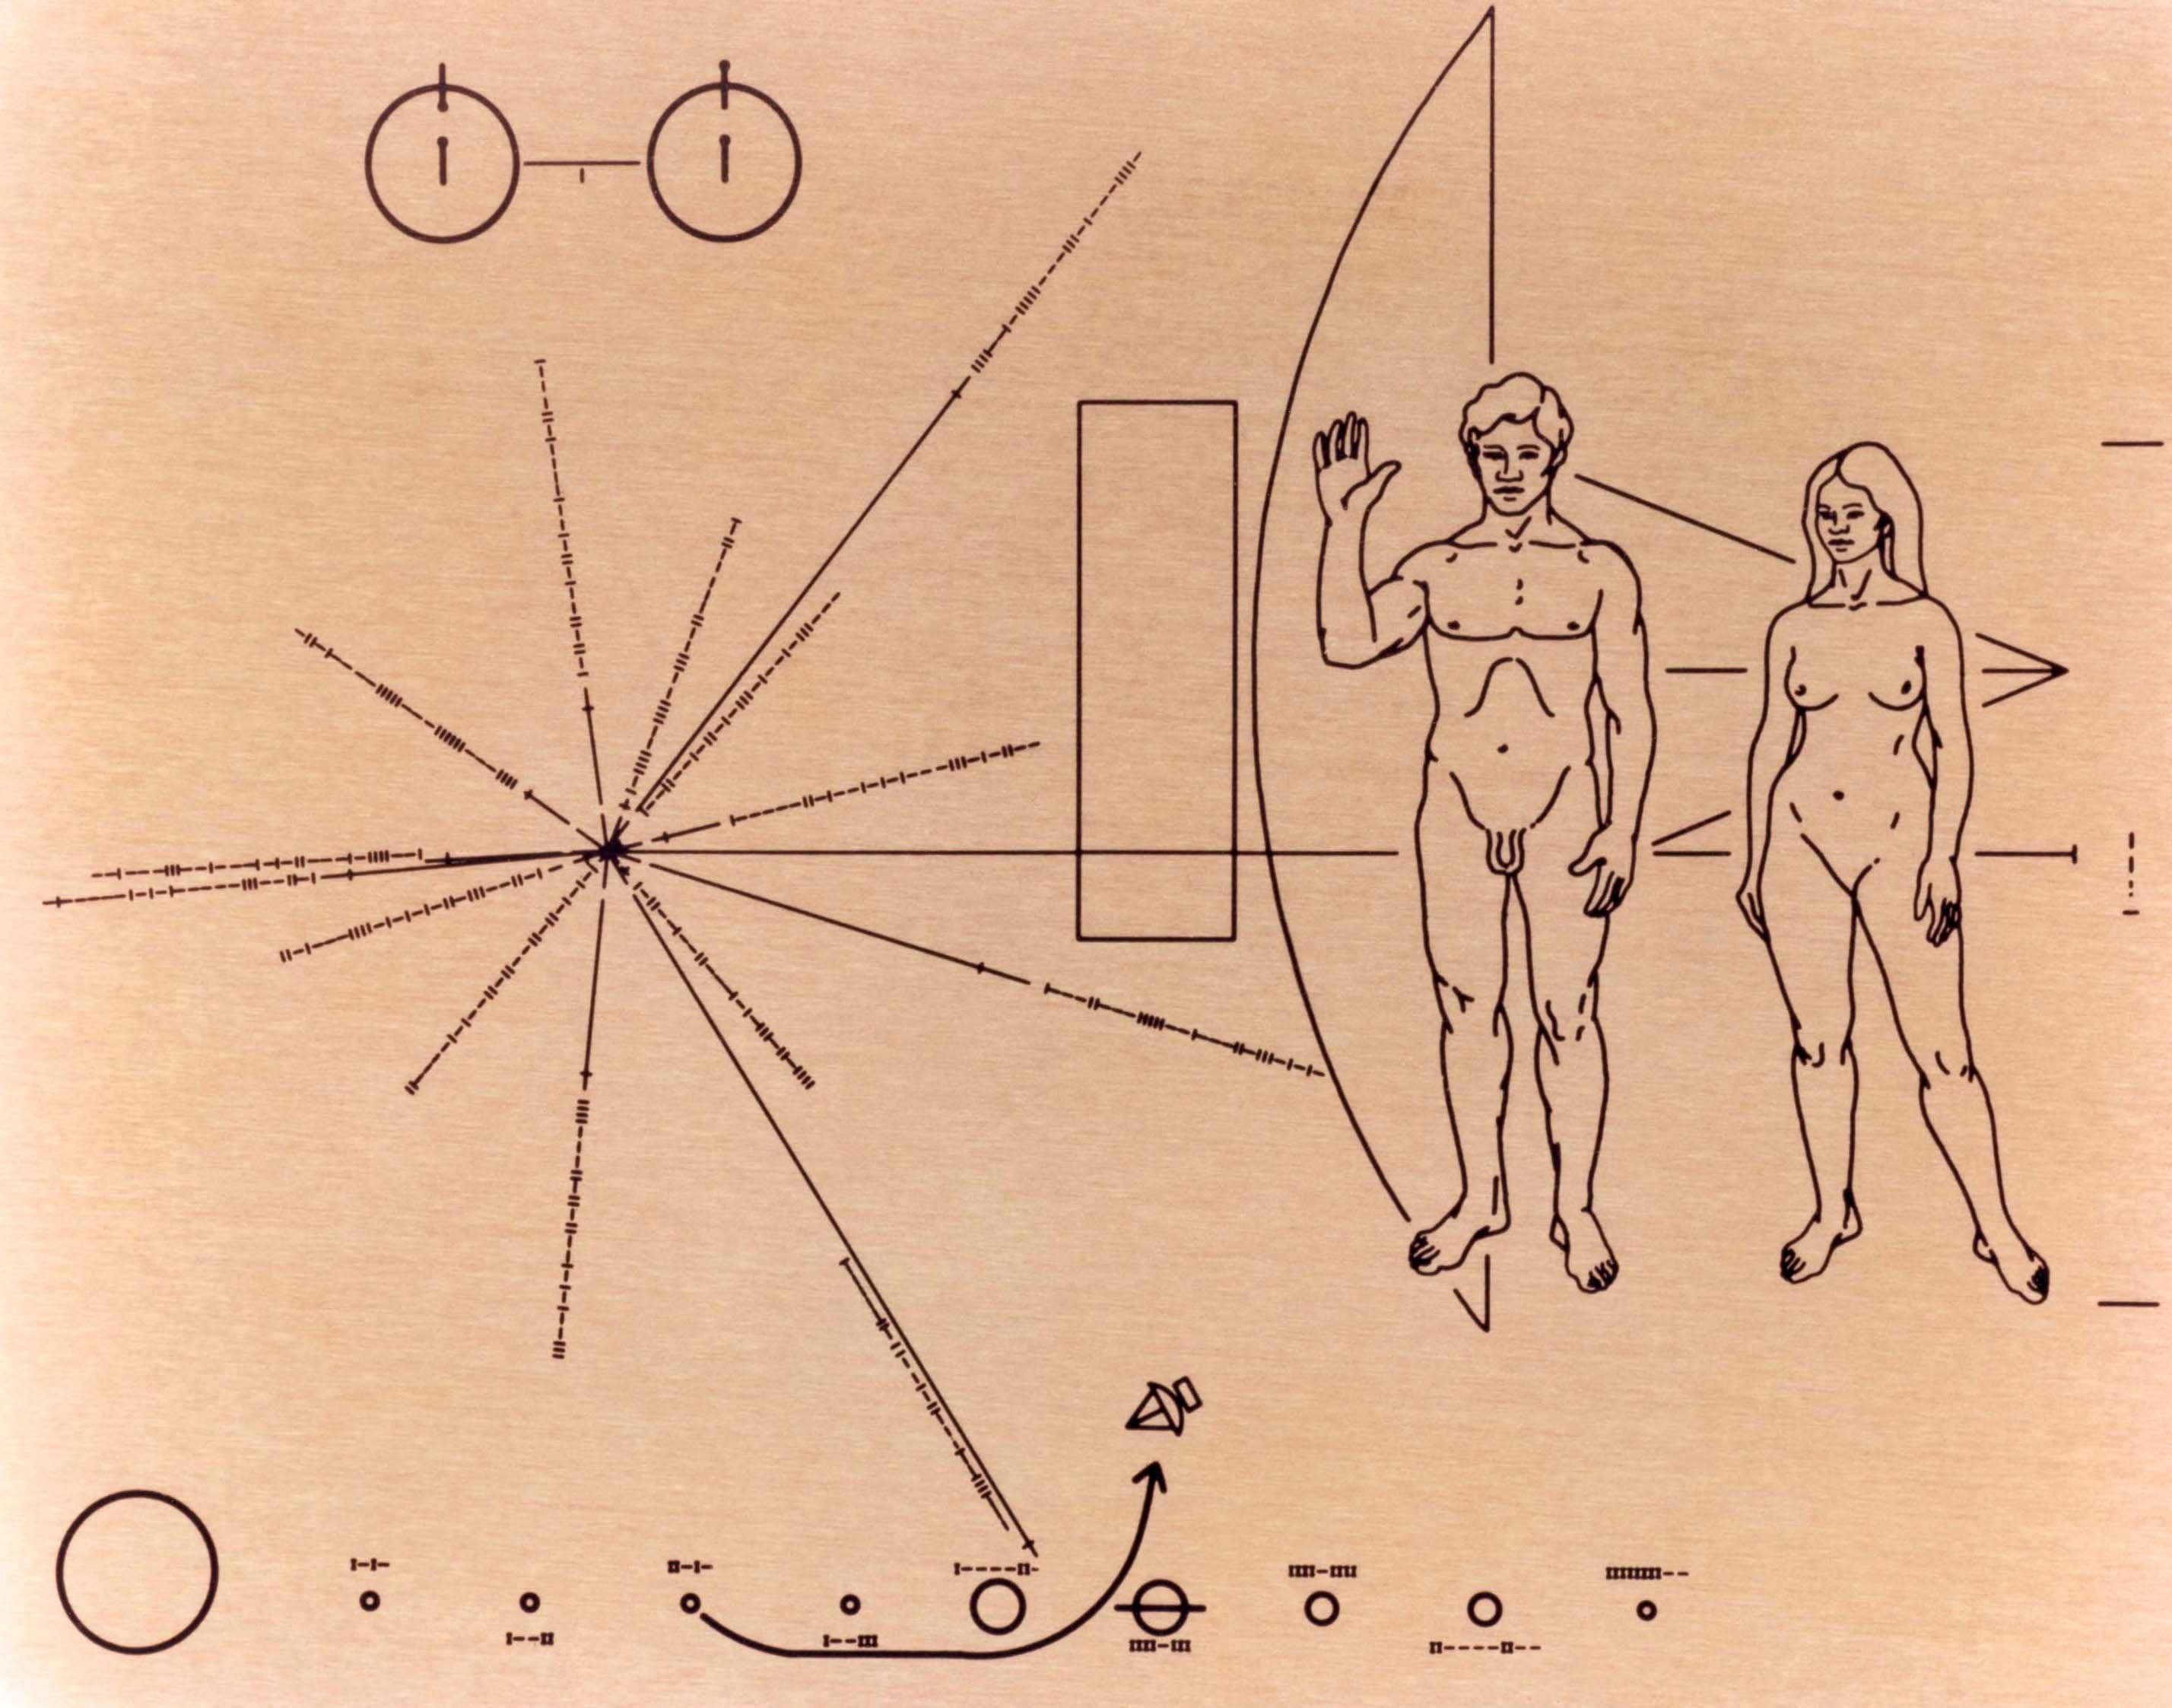 لوحة ذهبية على شكل رجل وامرأة وبعض الخطوط التي تصور النظام الشمسي.